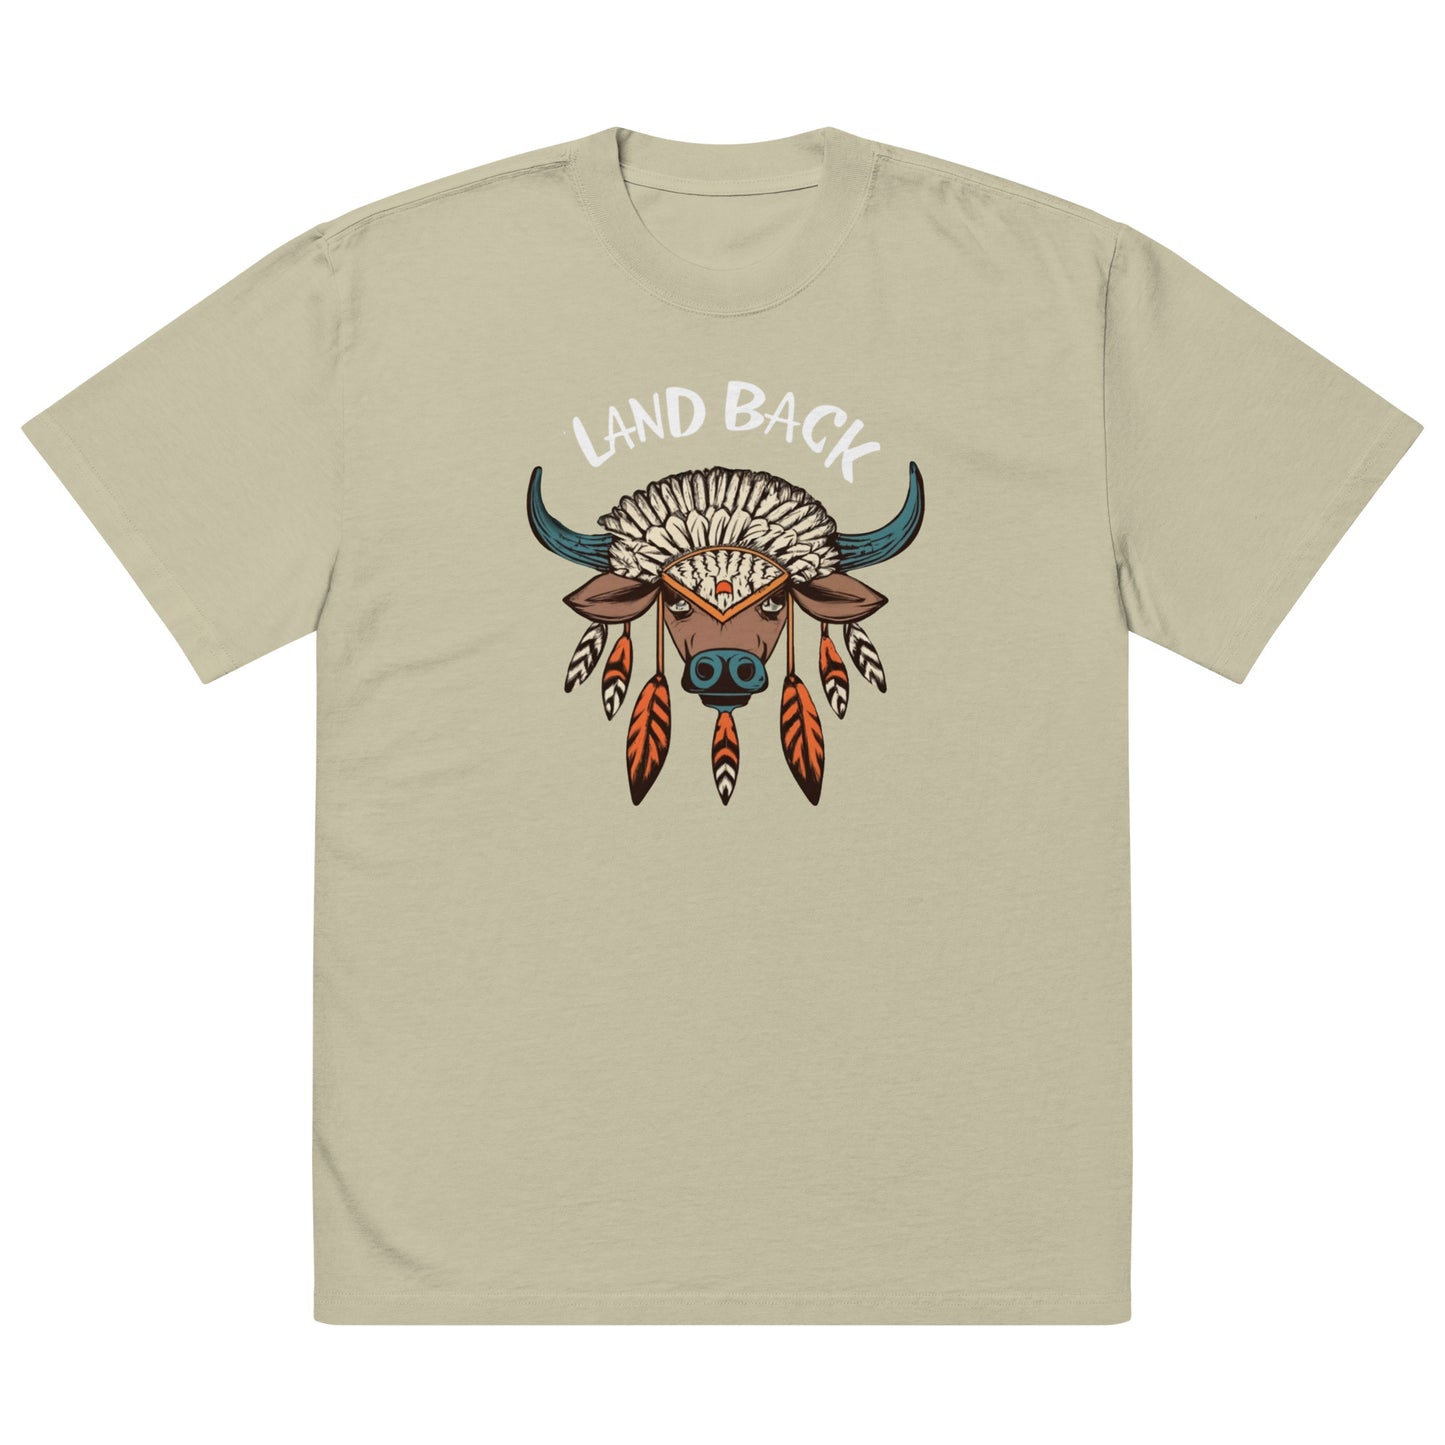 Buffalo Medicine - Land Back Oversized faded t-shirt